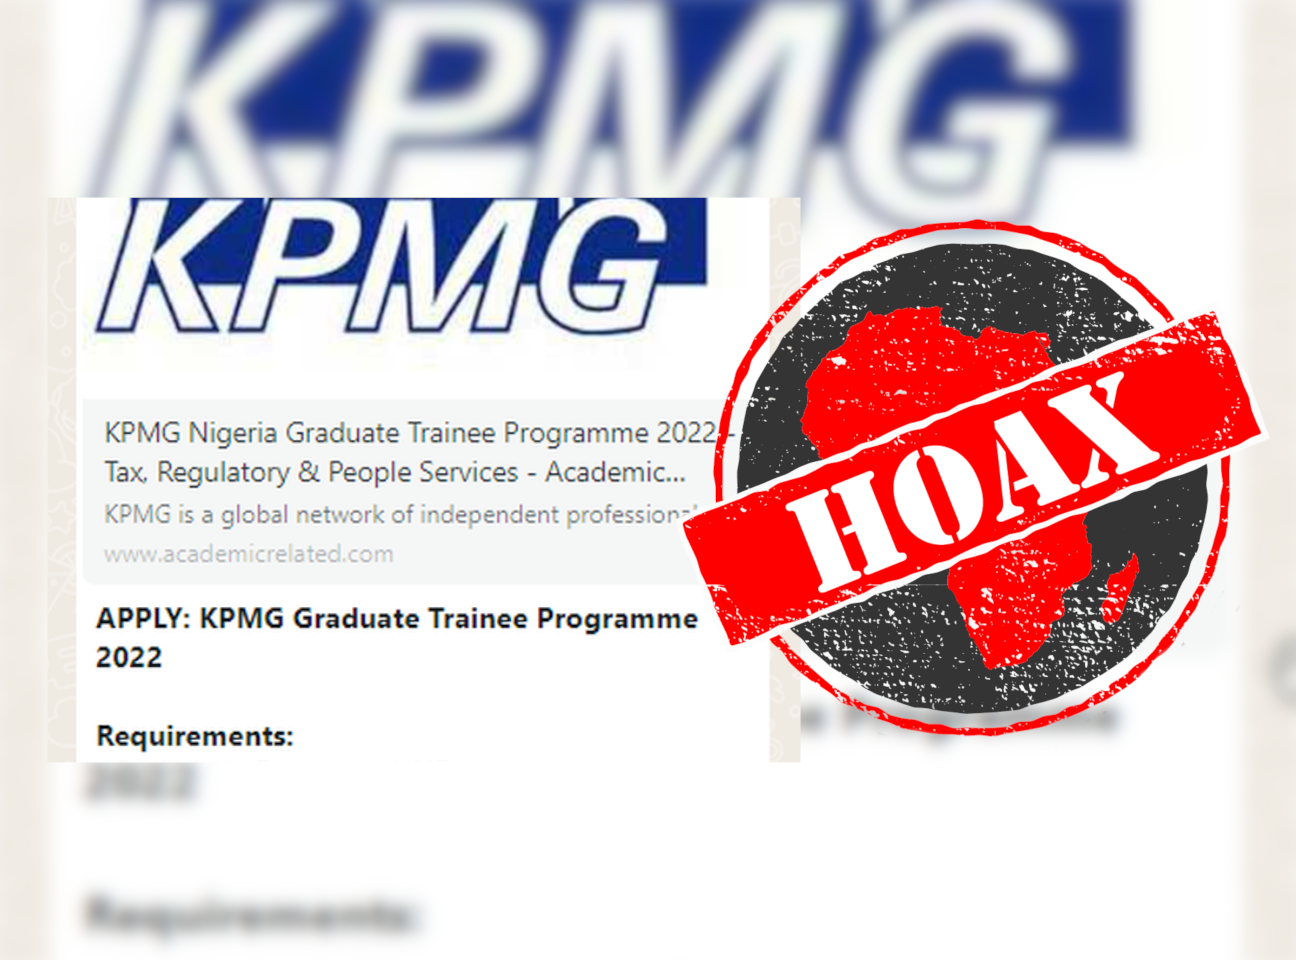 KPMG scam message